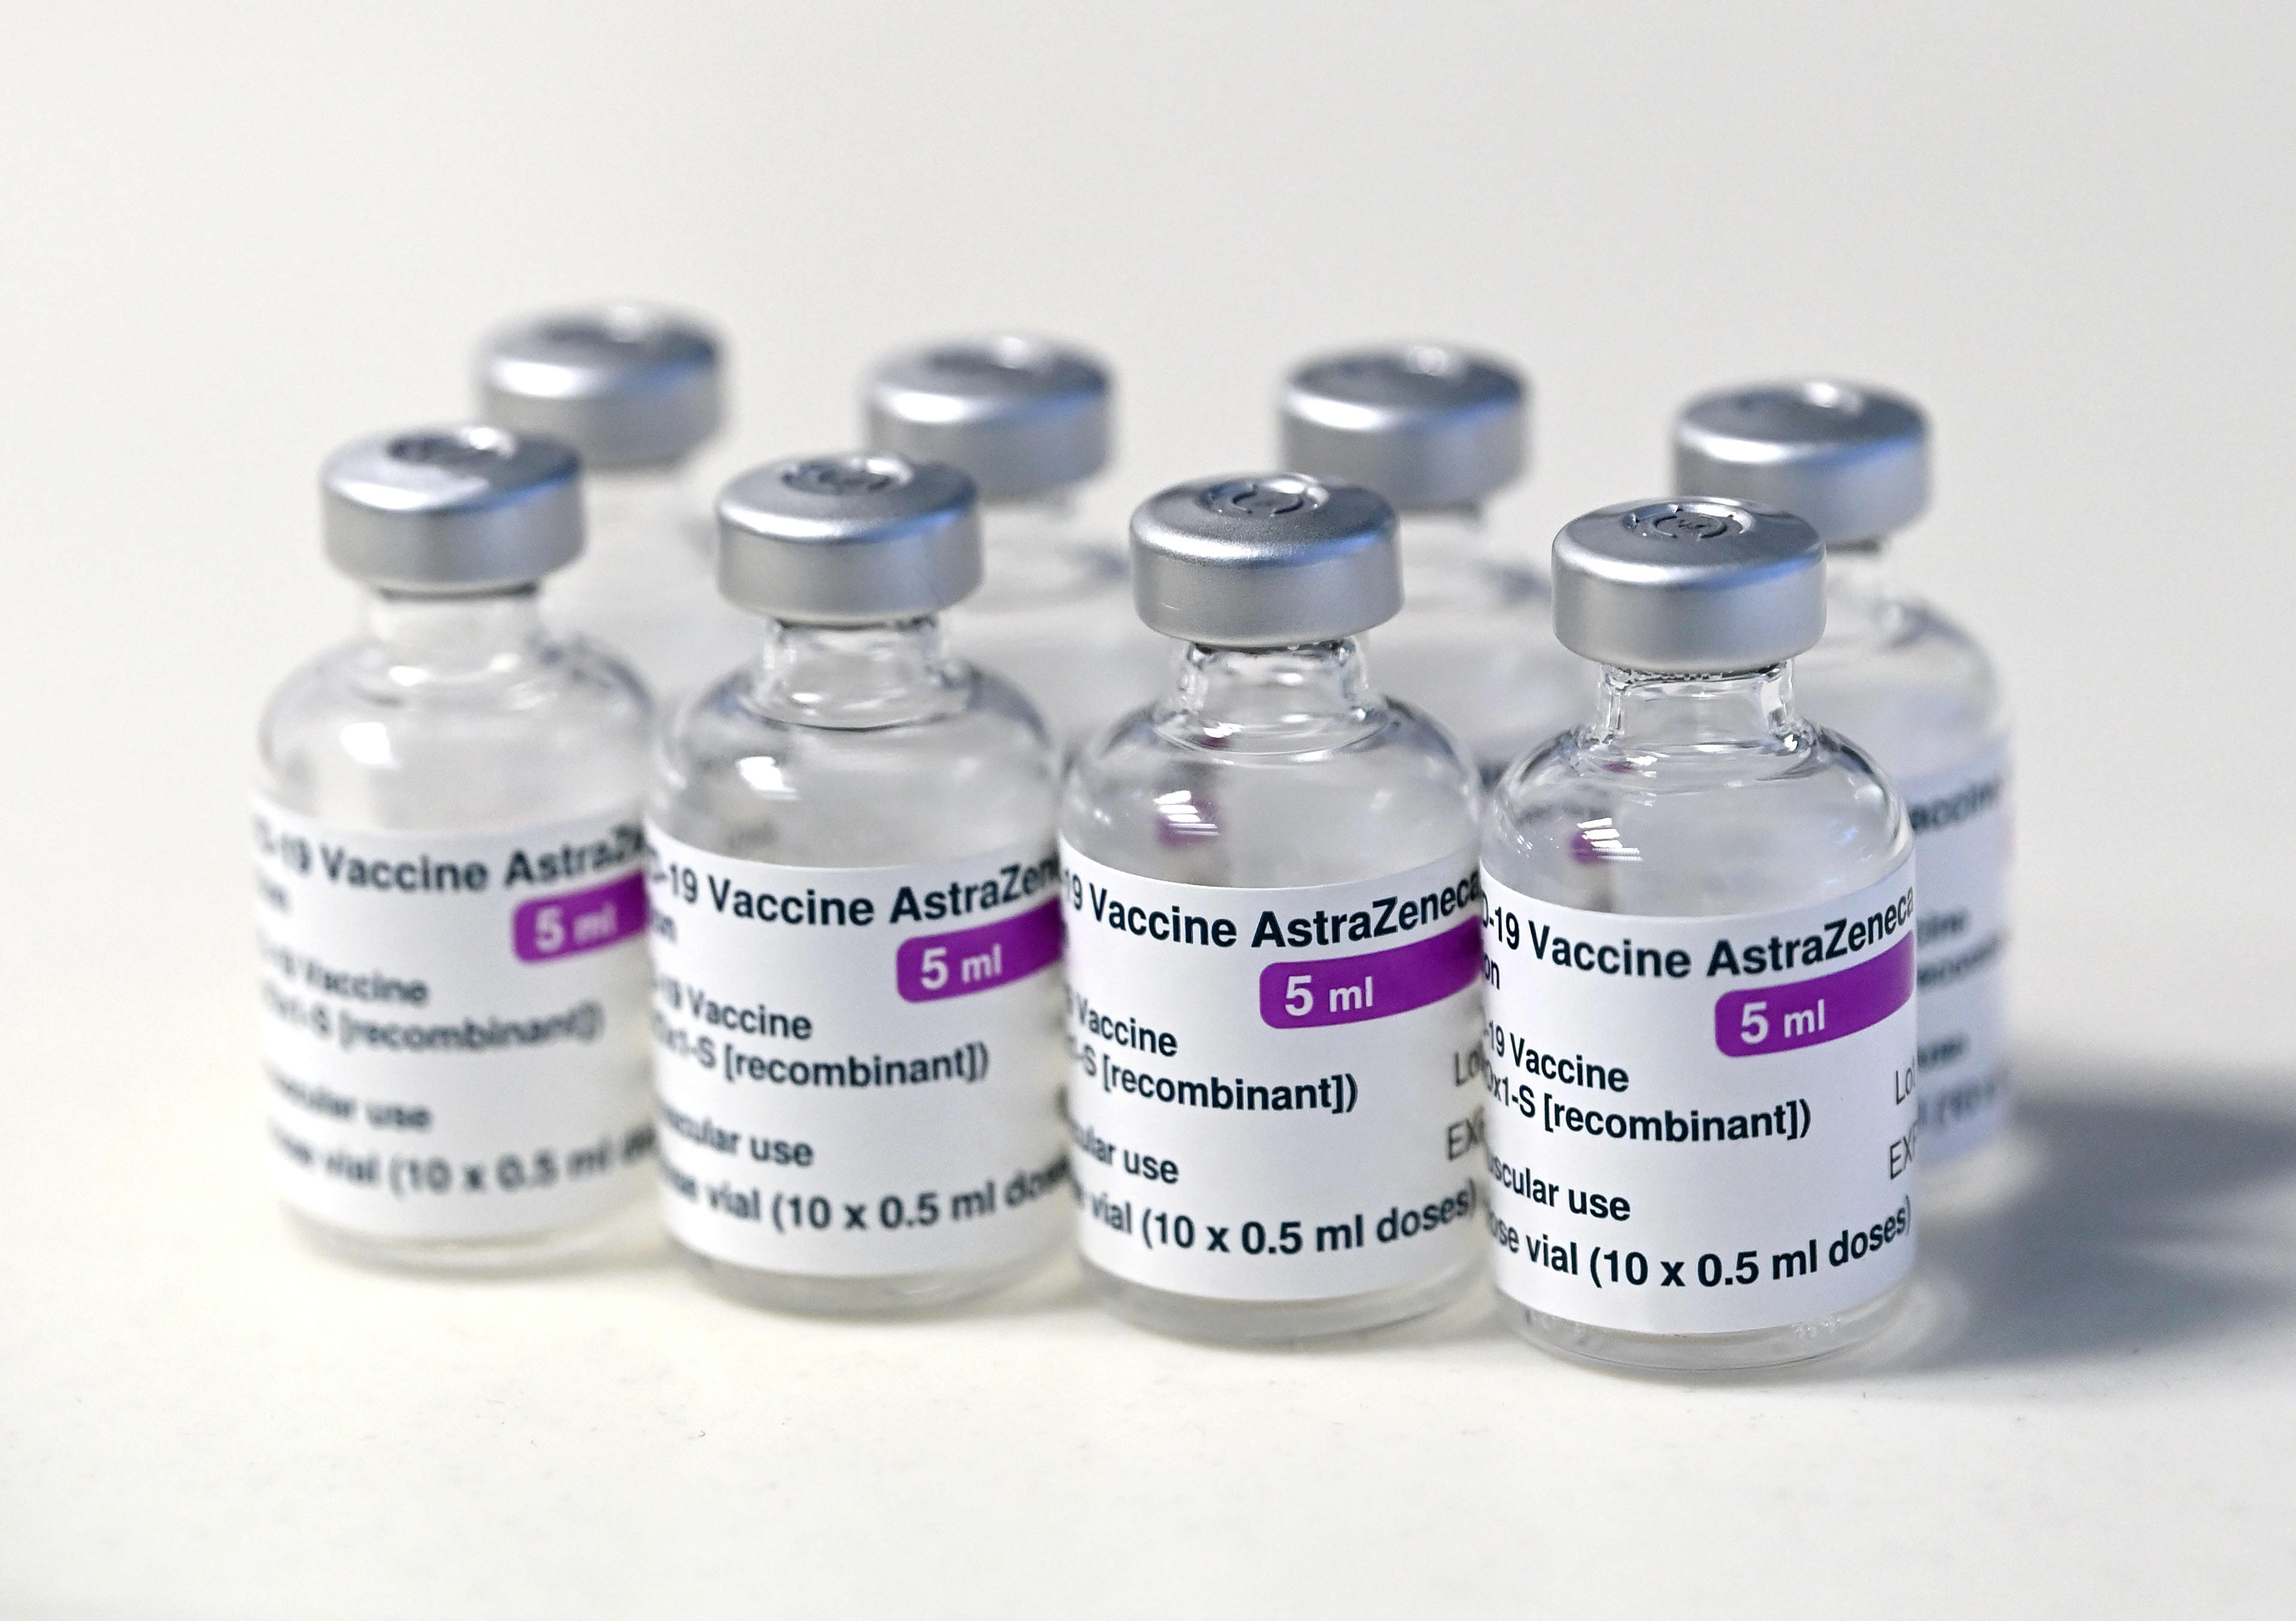 Denmark discontinues use of AstraZeneca Covid vaccine